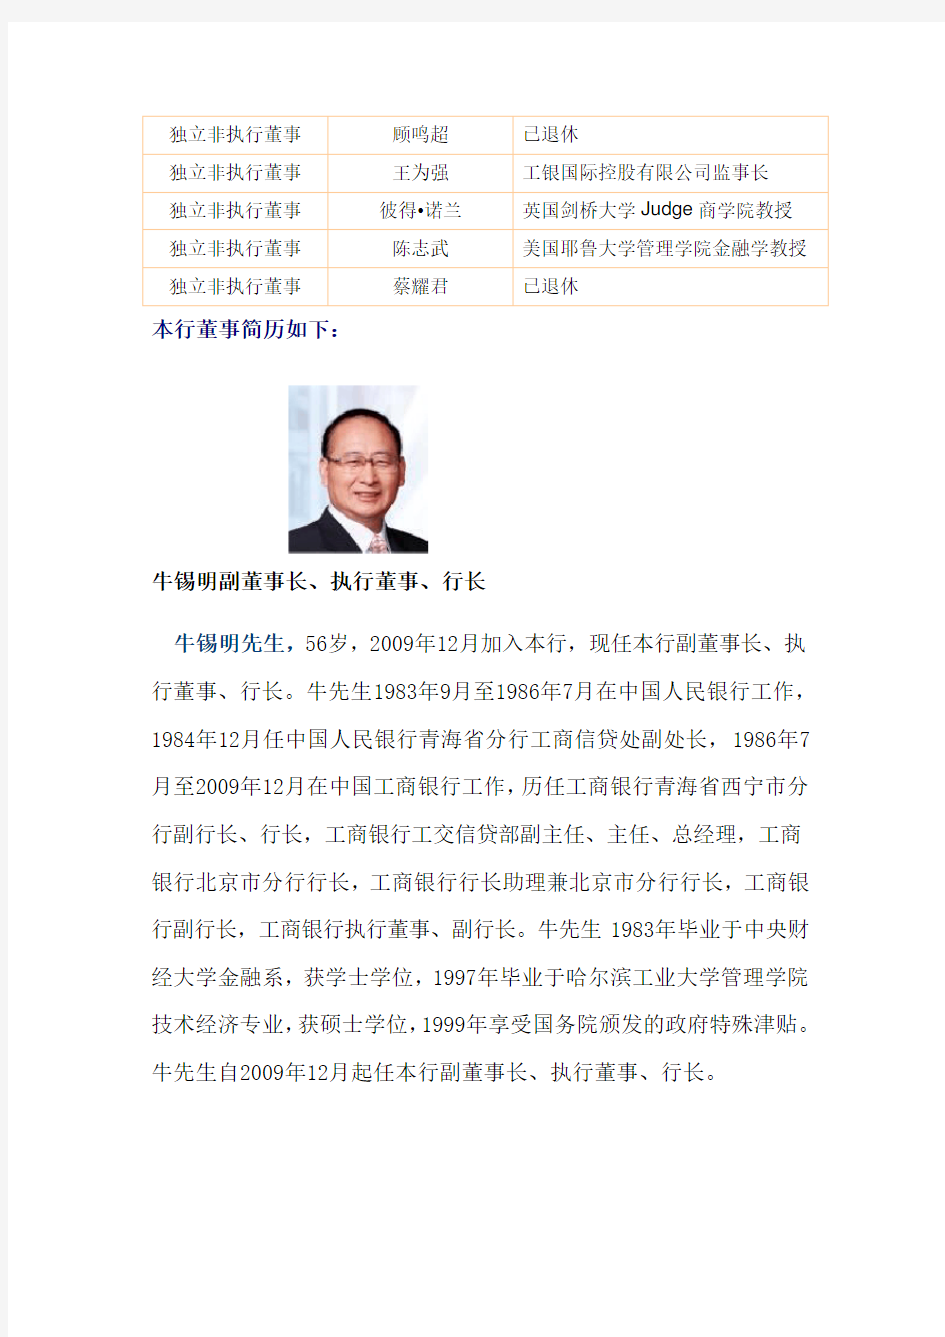 中国交通银行的主要领导人